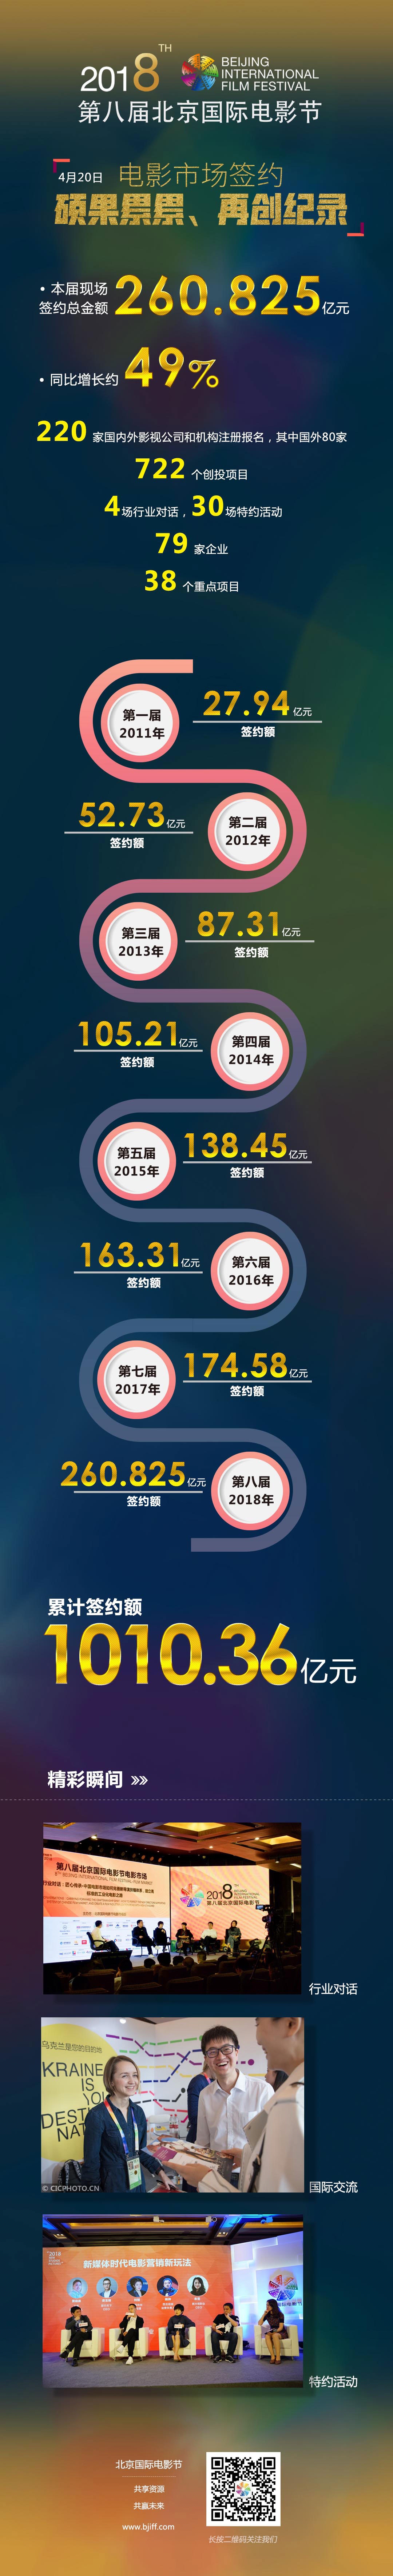 北京国际电影节市场签约总额260.825亿 再破纪录